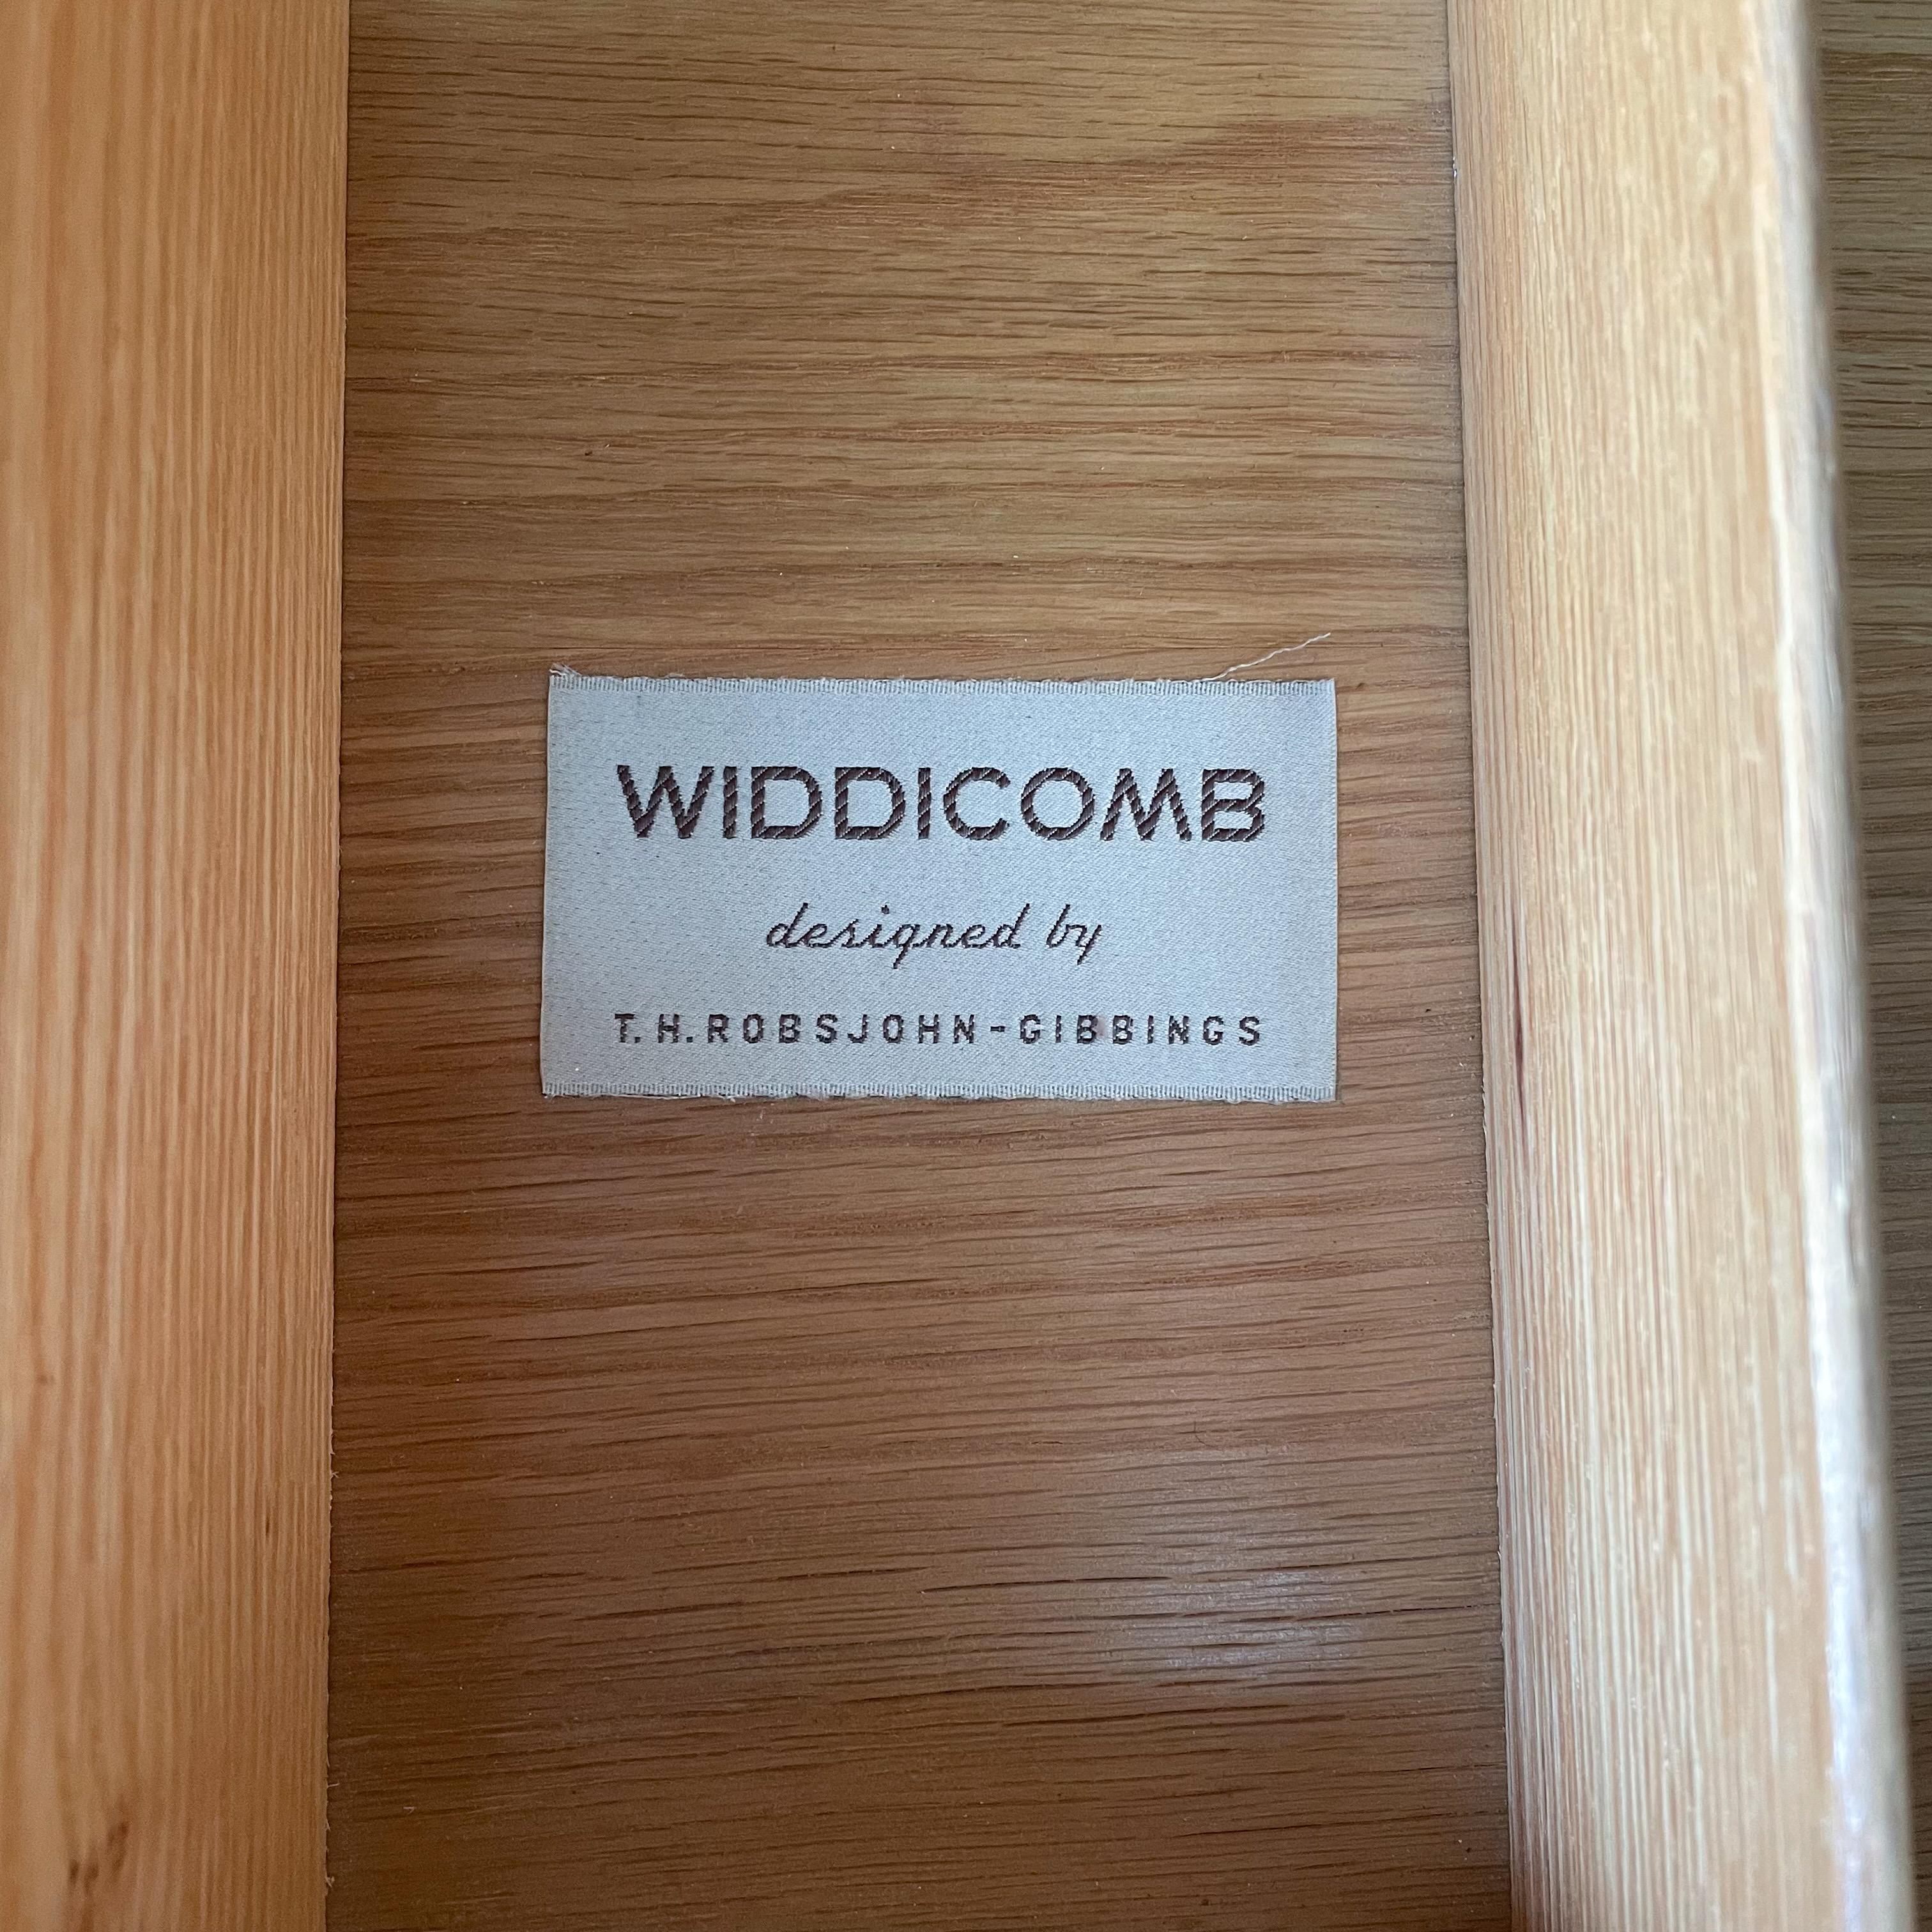 Mid-20th Century T.H. Robsjohn-Gibbings Dresser for Widdicomb